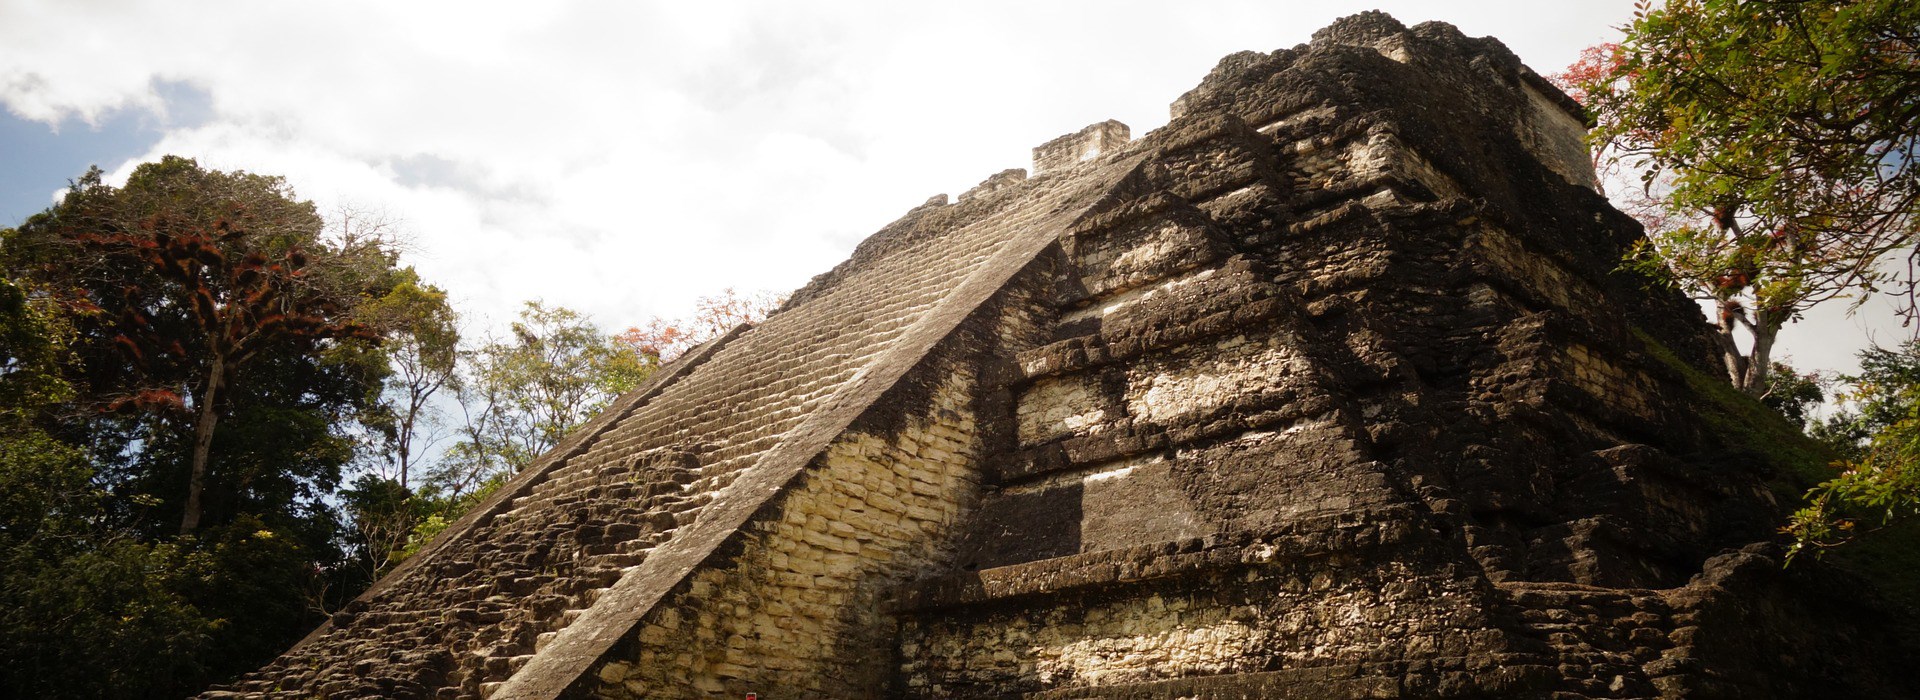 Visiter Le site archéologique de Yaxha - Guatemala